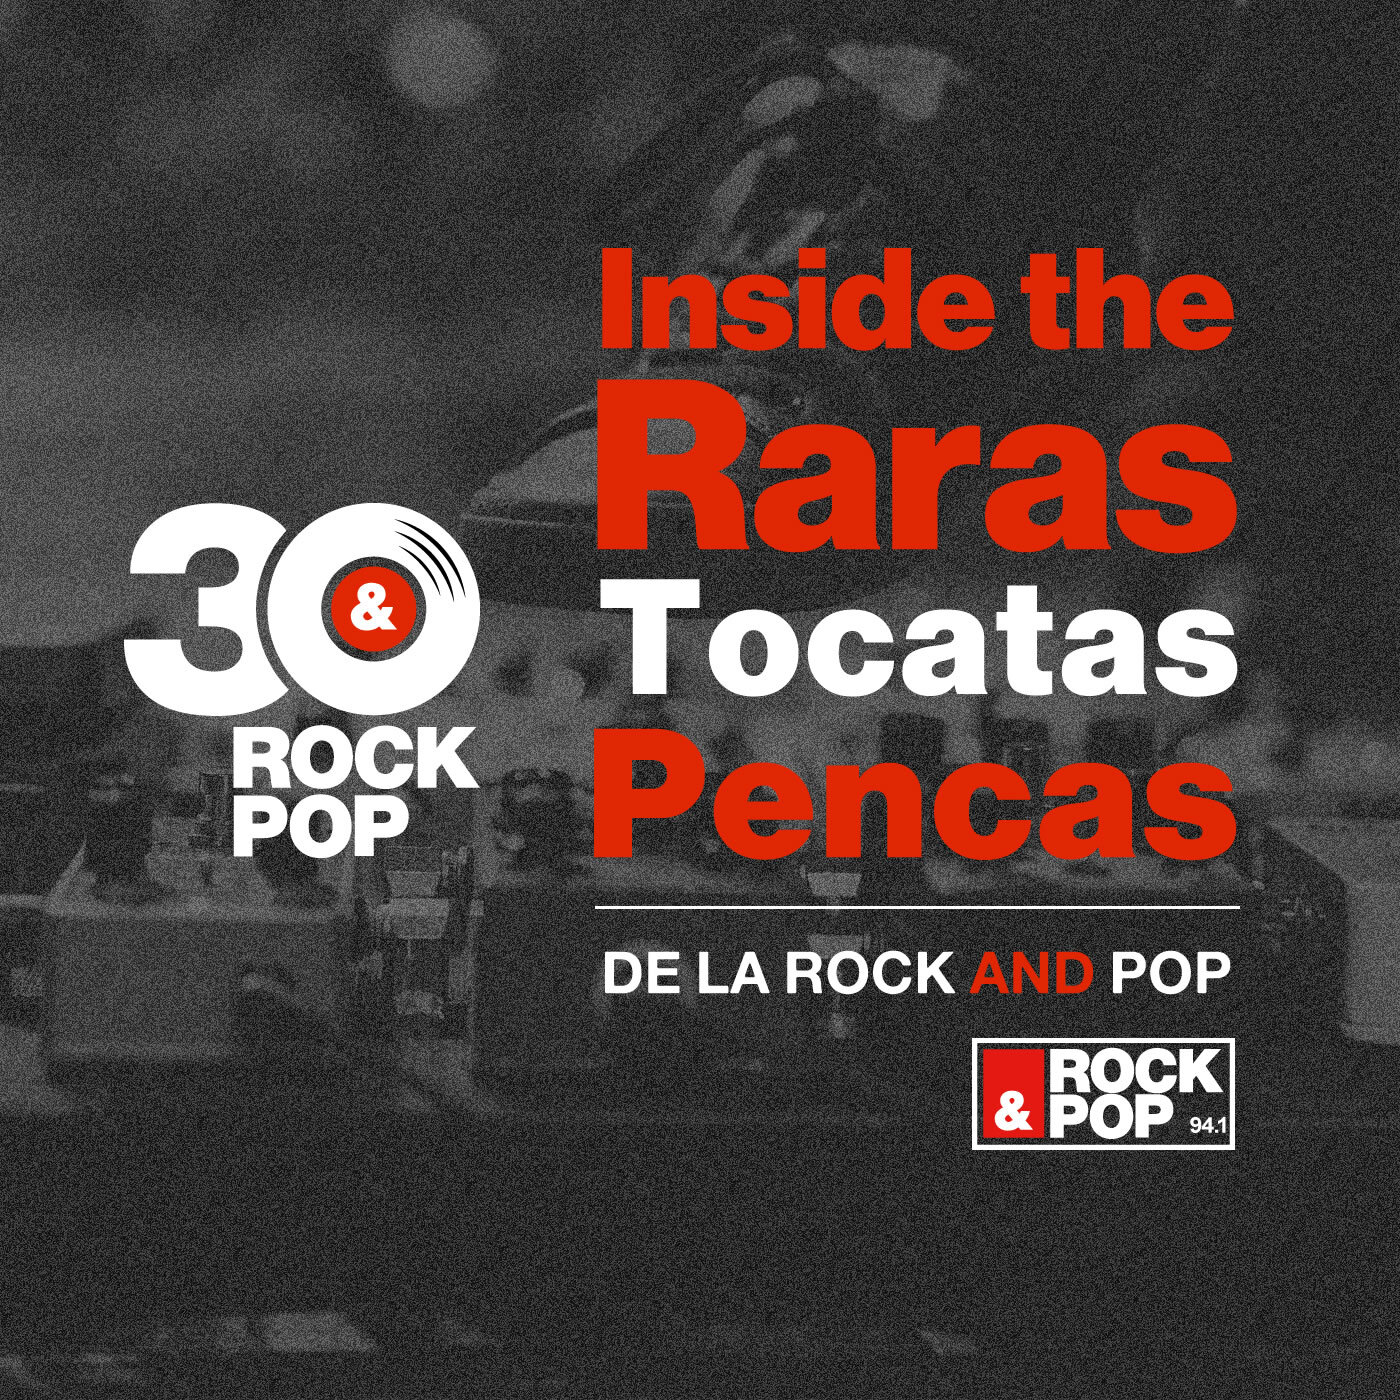 Inside The Raras Tocatas Pencas es un podcast oficial de radio Rock & Pop por sus 30 años de trayectoria.